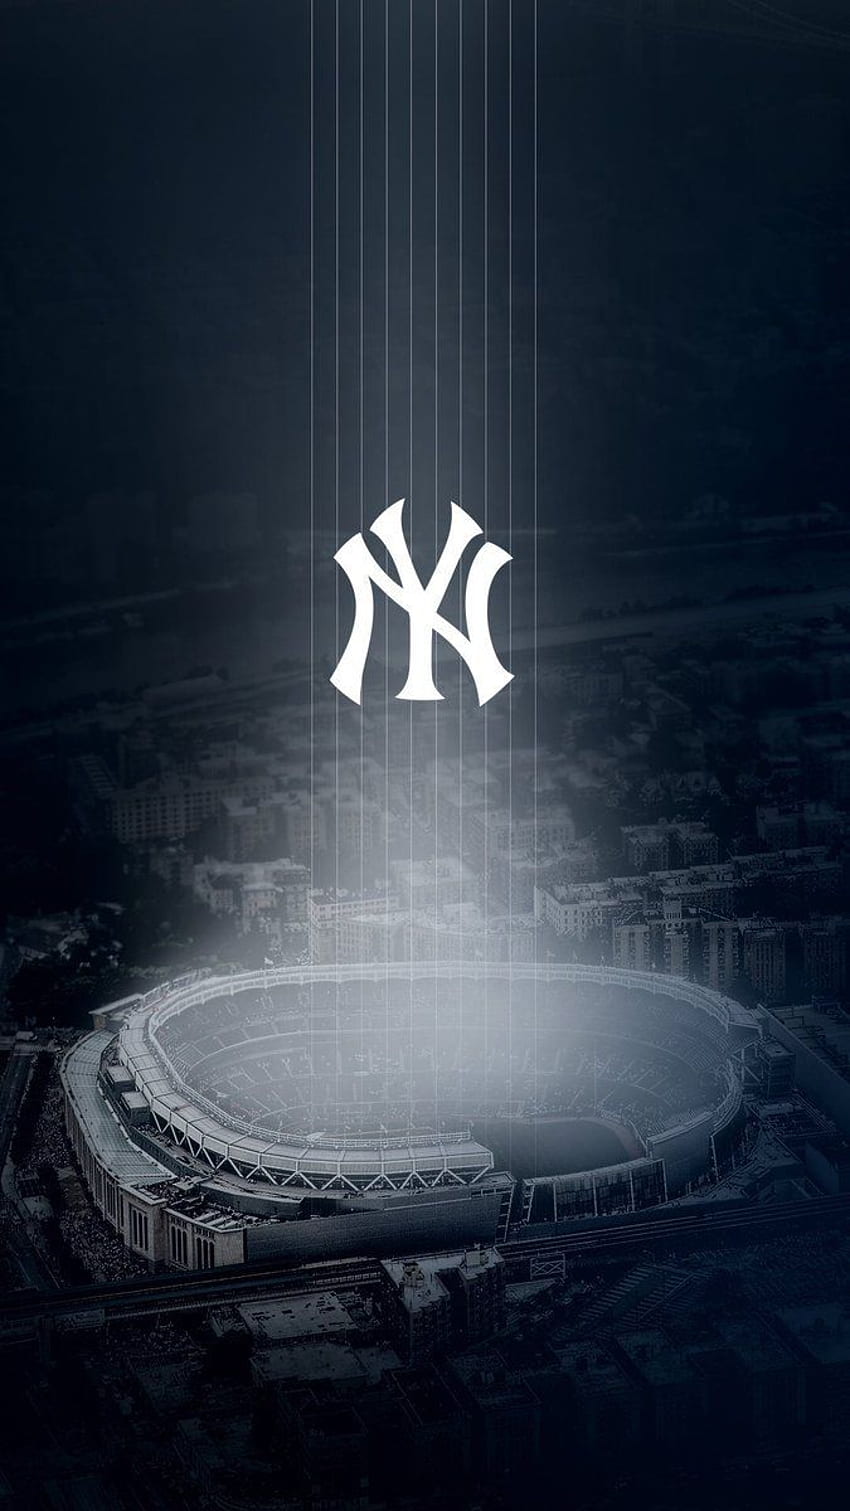 Google Result For Media. New York Yankees Logo, New York Yankees, New York Yankees Stadium, Cool New York Yankees HD phone wallpaper